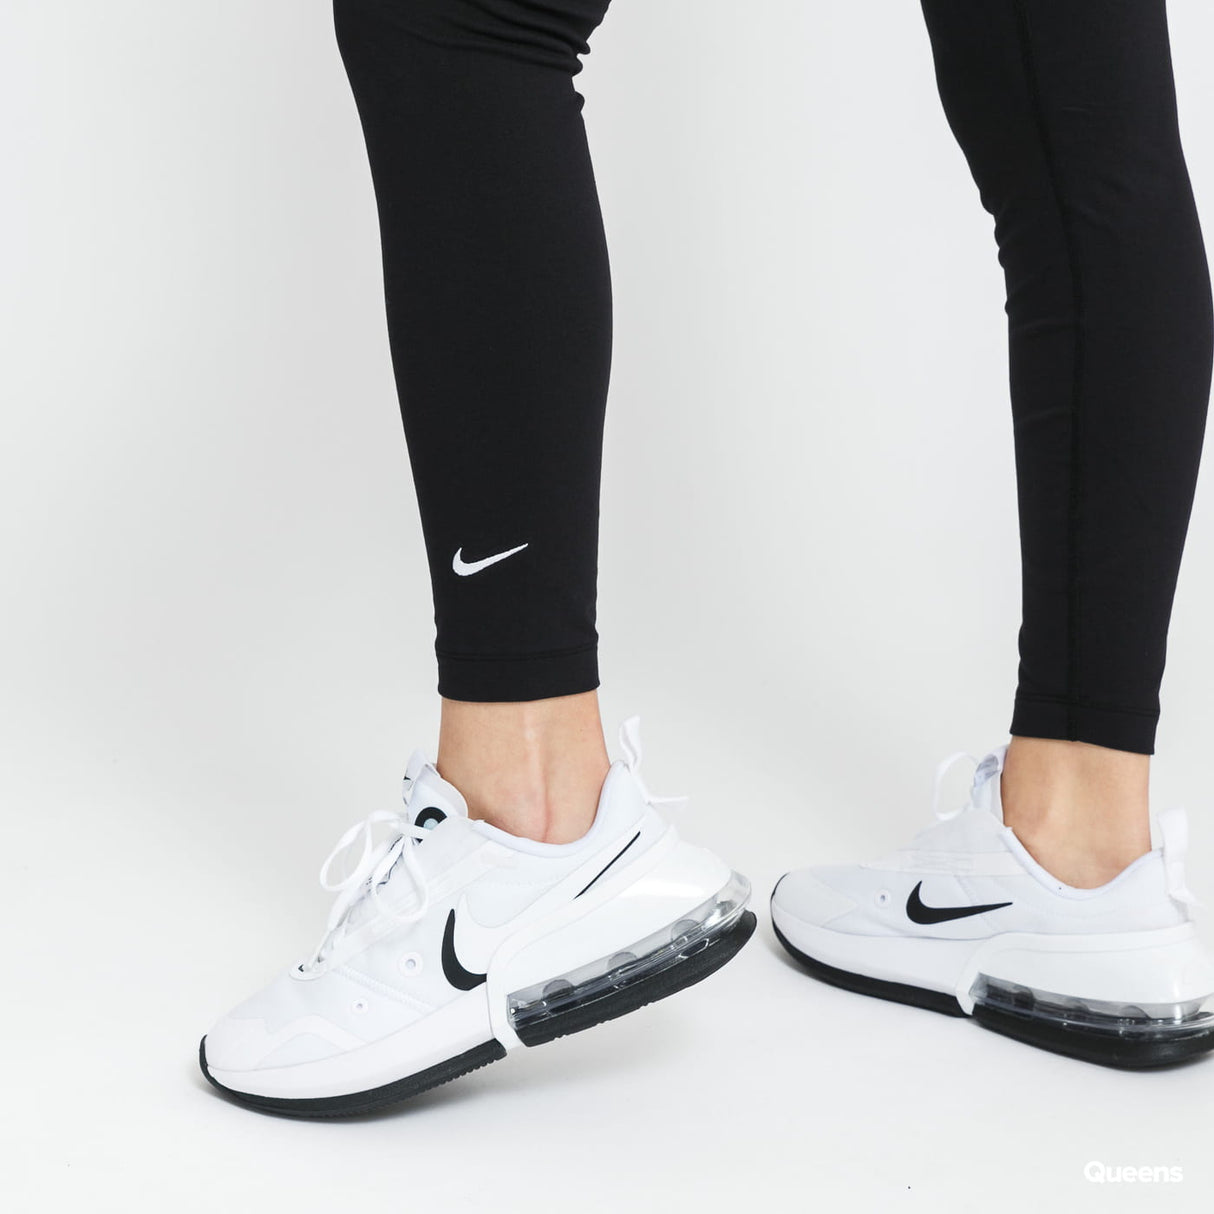 Nike Sportswear Essential Women's 7/8 Mid-Rise Leggings in Black